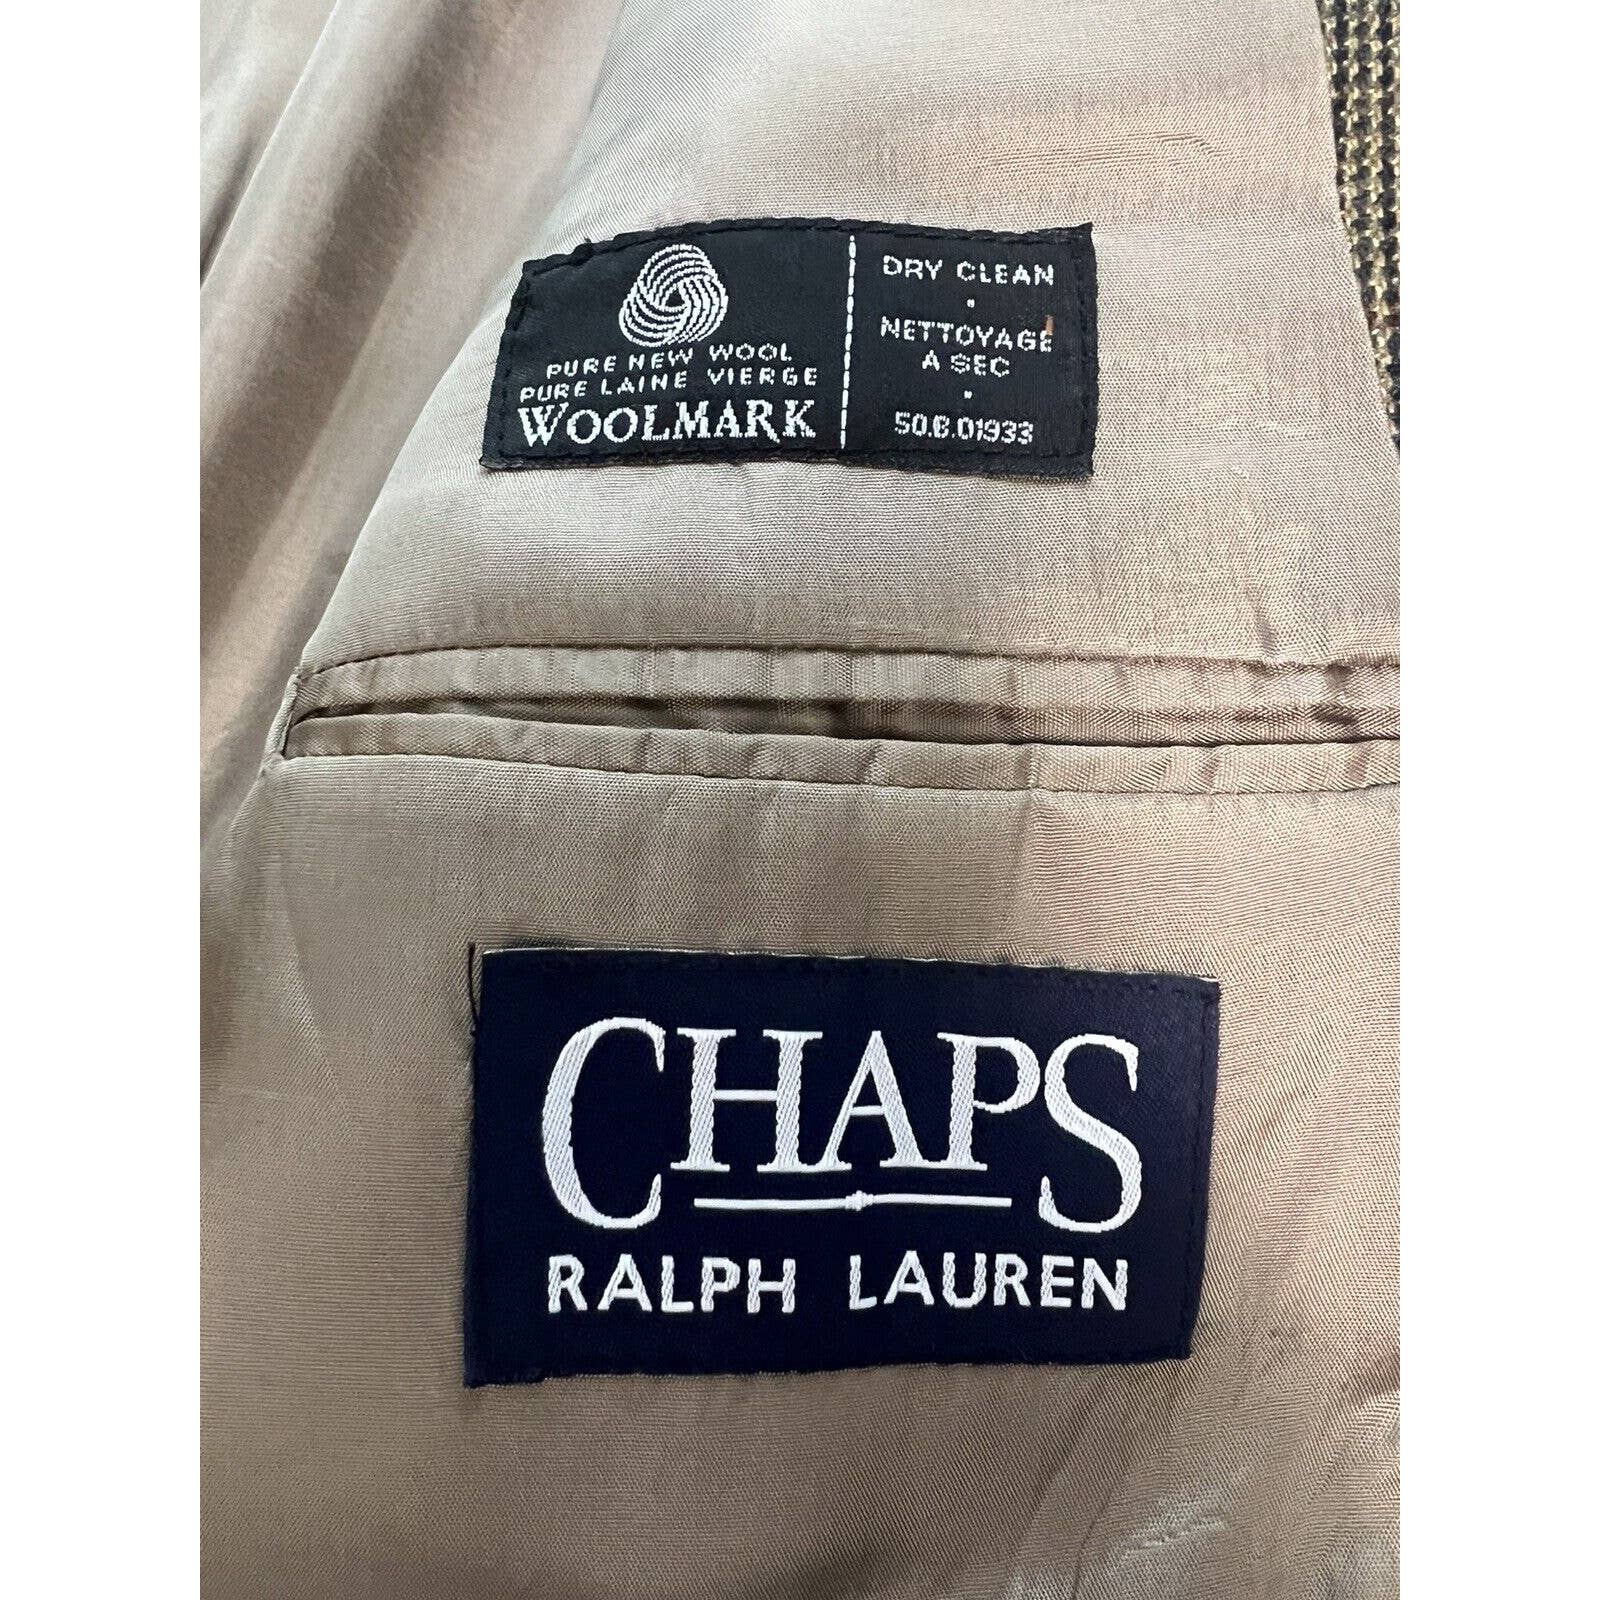 Ralph Lauren 2 Button Sport Coat 40R Lambswool Jacket Blazer Brown Check Vintage